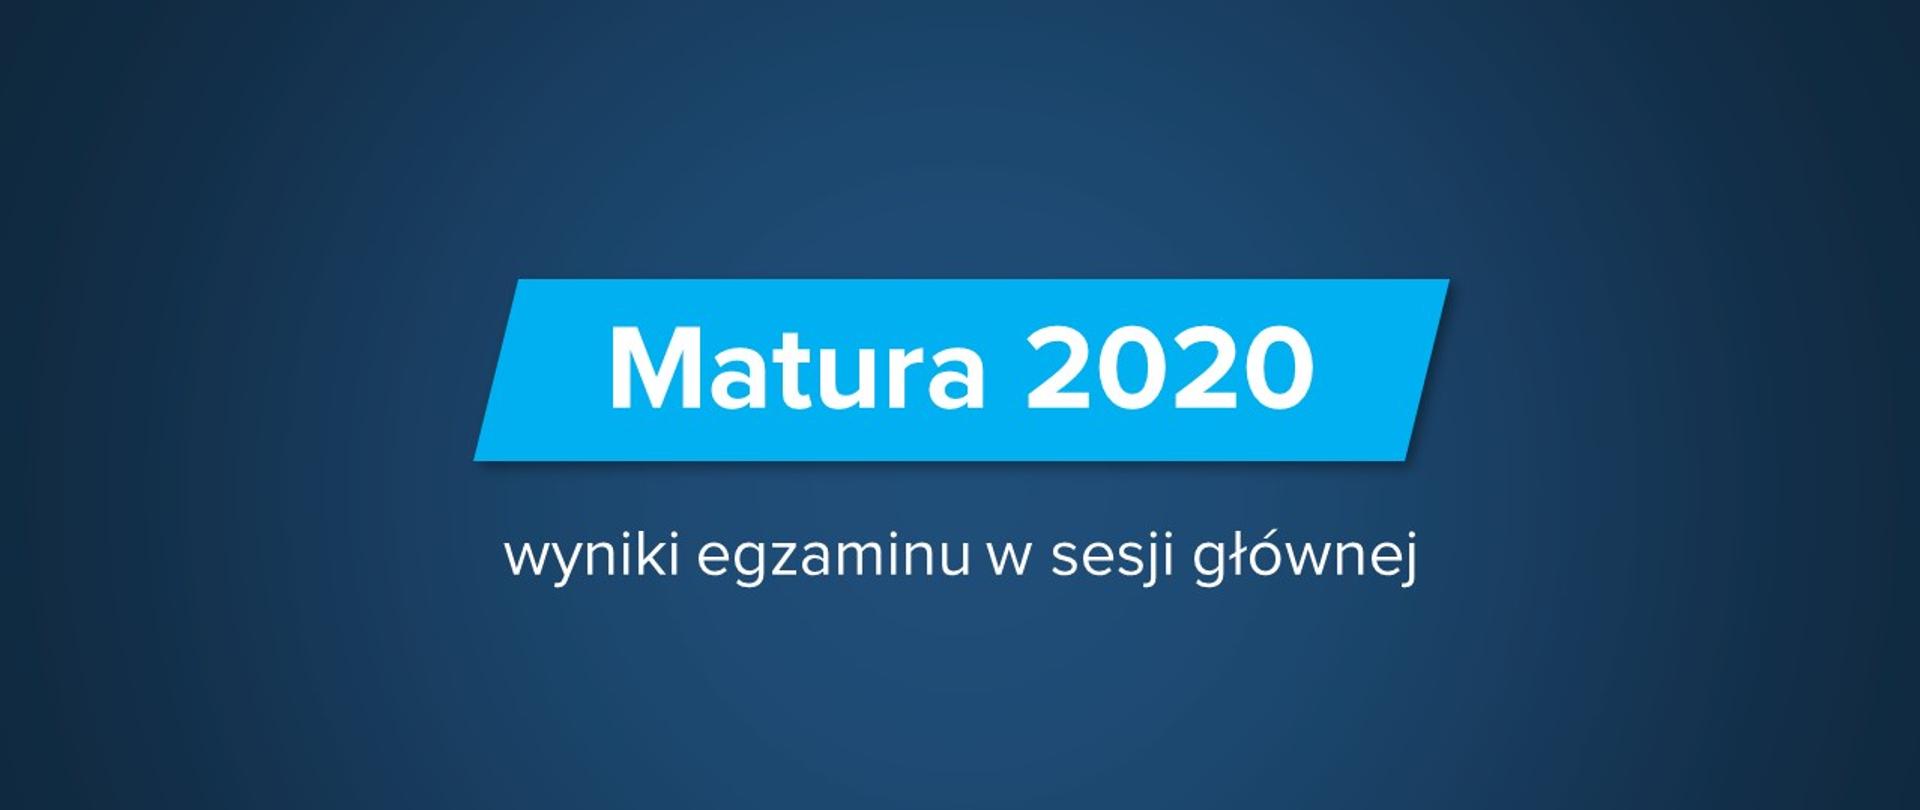 Matura 2020 - wyniki egzaminu w sesji głównej - Kuratorium ...